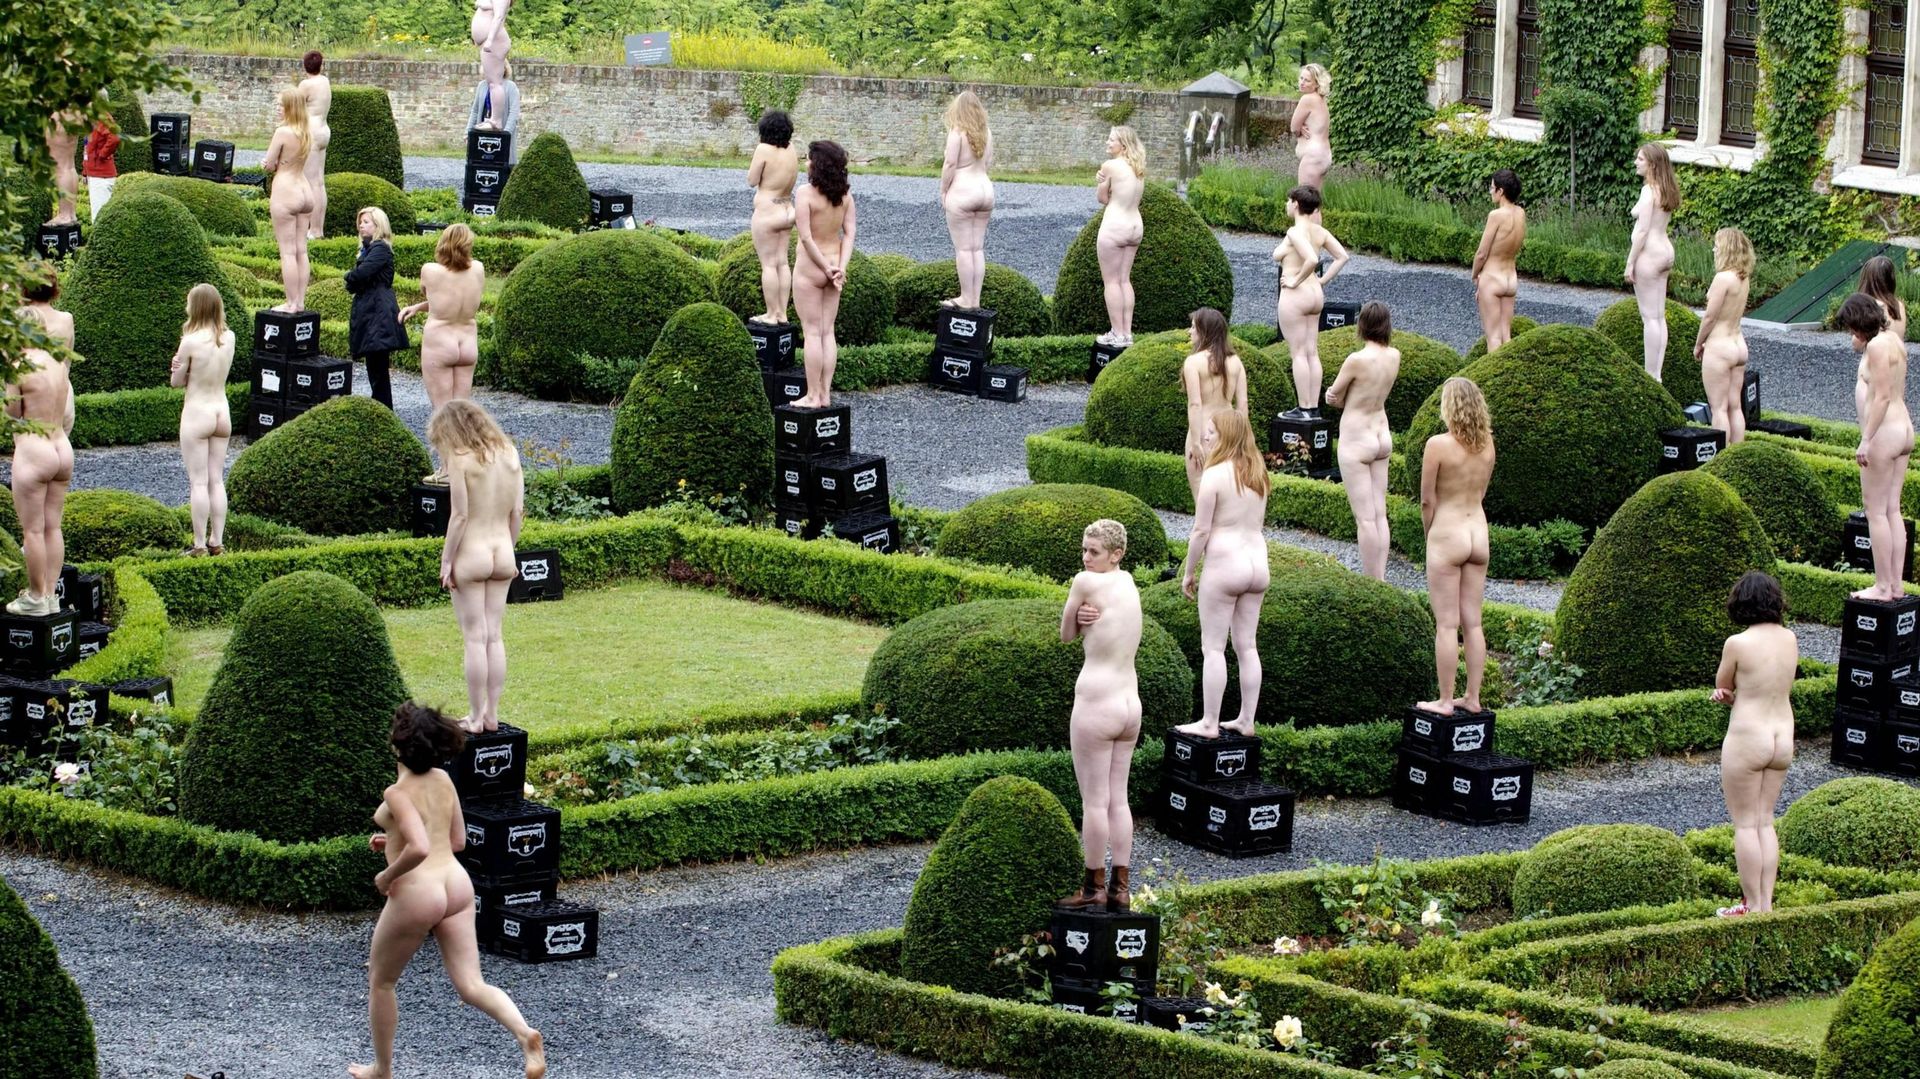 La société ne propose pas encore les services de jardiniers nudistes. Mais cela ne saurait tarder... (illustration)